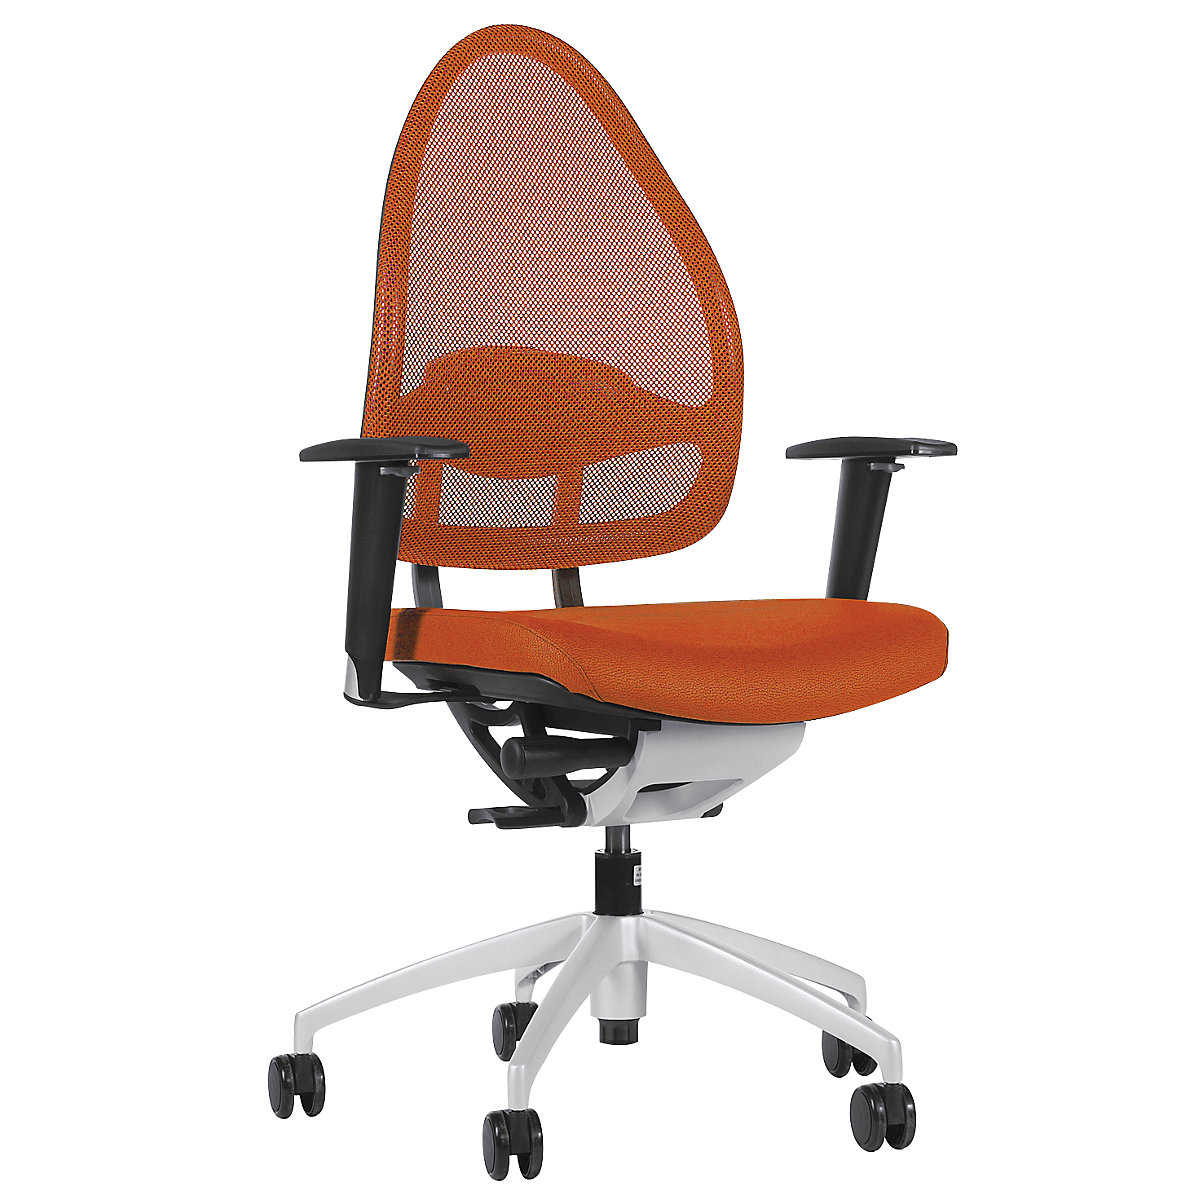 Uredski okretni stolac lijepog oblika, s mrežastim naslonom – Topstar